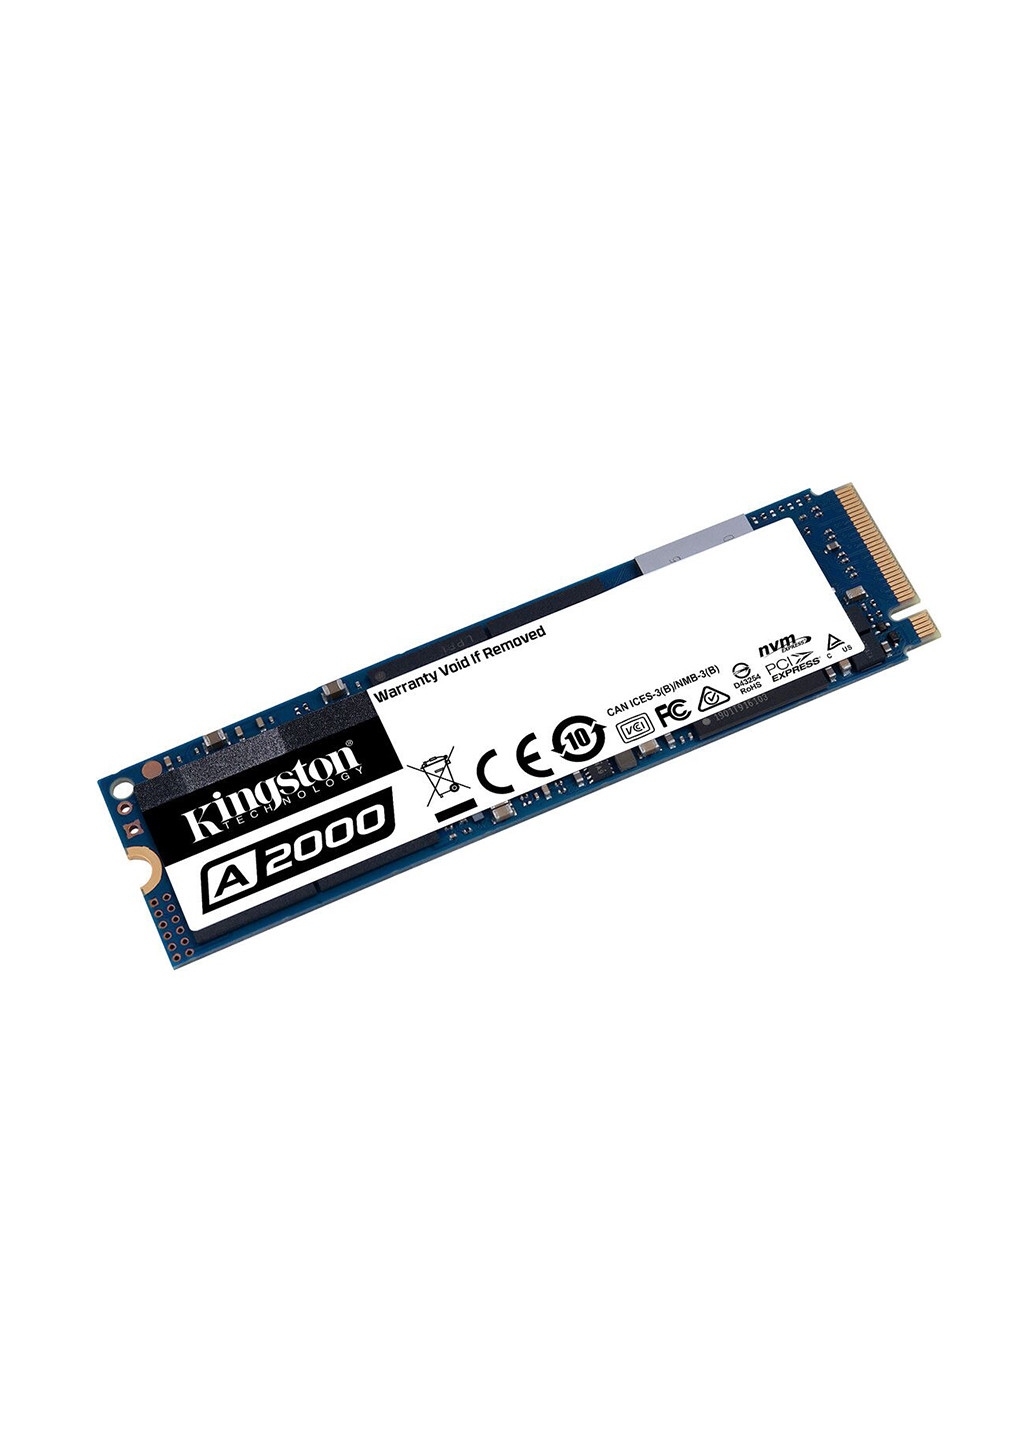 Внутренний SSD A2000 250GB NVMe M.2 2280 PCIe 3.0 x4 3D NAND TLC (SA2000M8/250G) Kingston Внутренний SSD Kingston A2000 250GB NVMe M.2 2280 PCIe 3.0 x4 3D NAND TLC (SA2000M8/250G) комбіновані